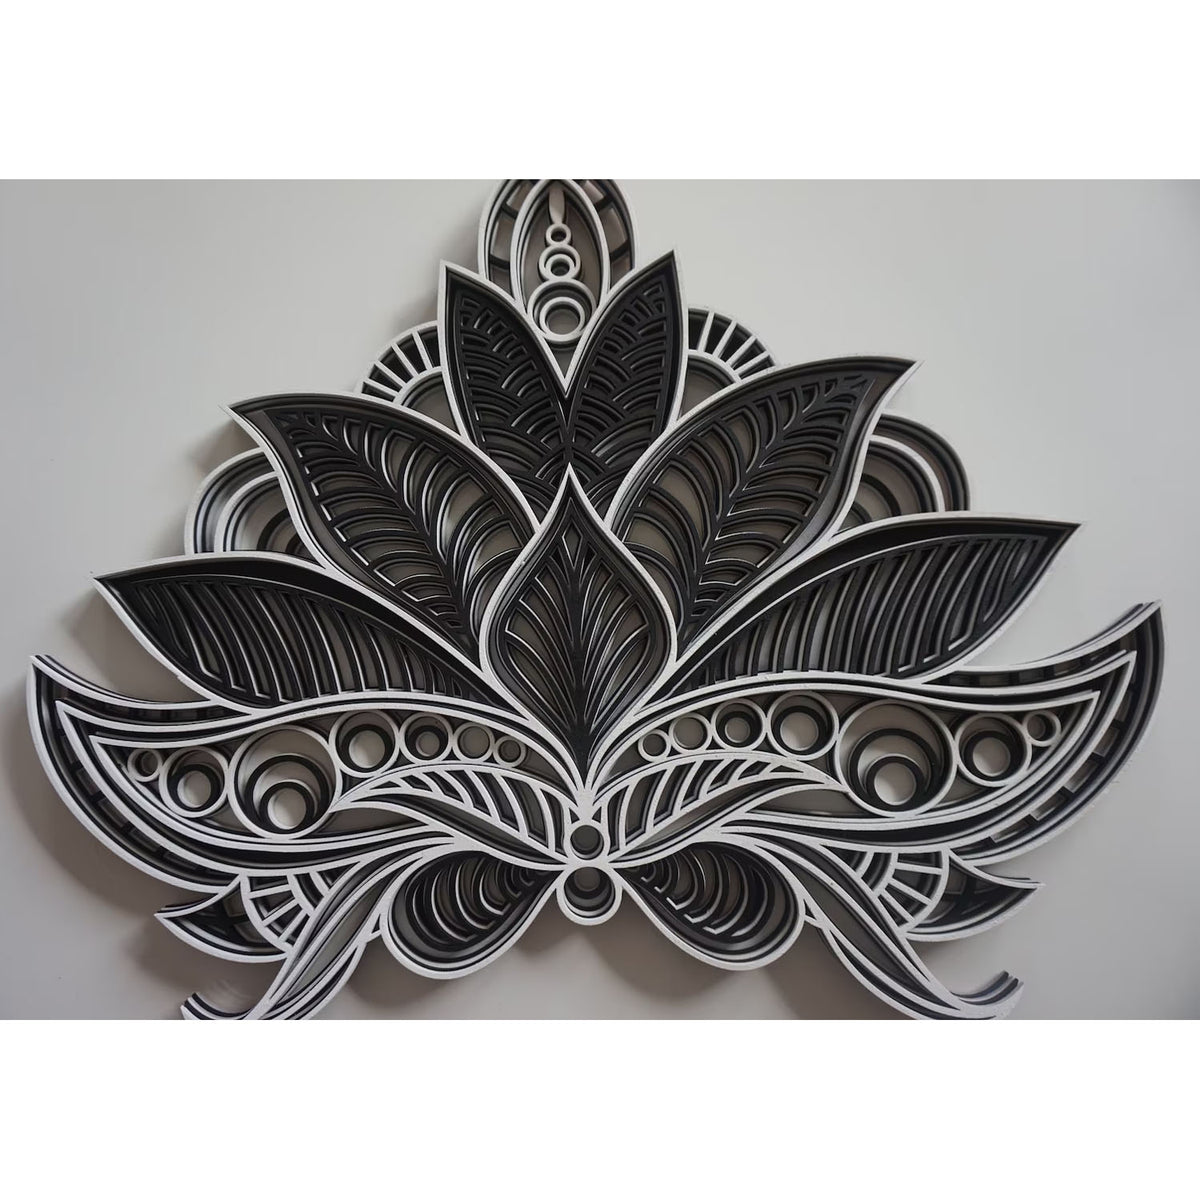 Norbit Lotus Flower Mandala Wall Hanging - Black/White - Notbrand